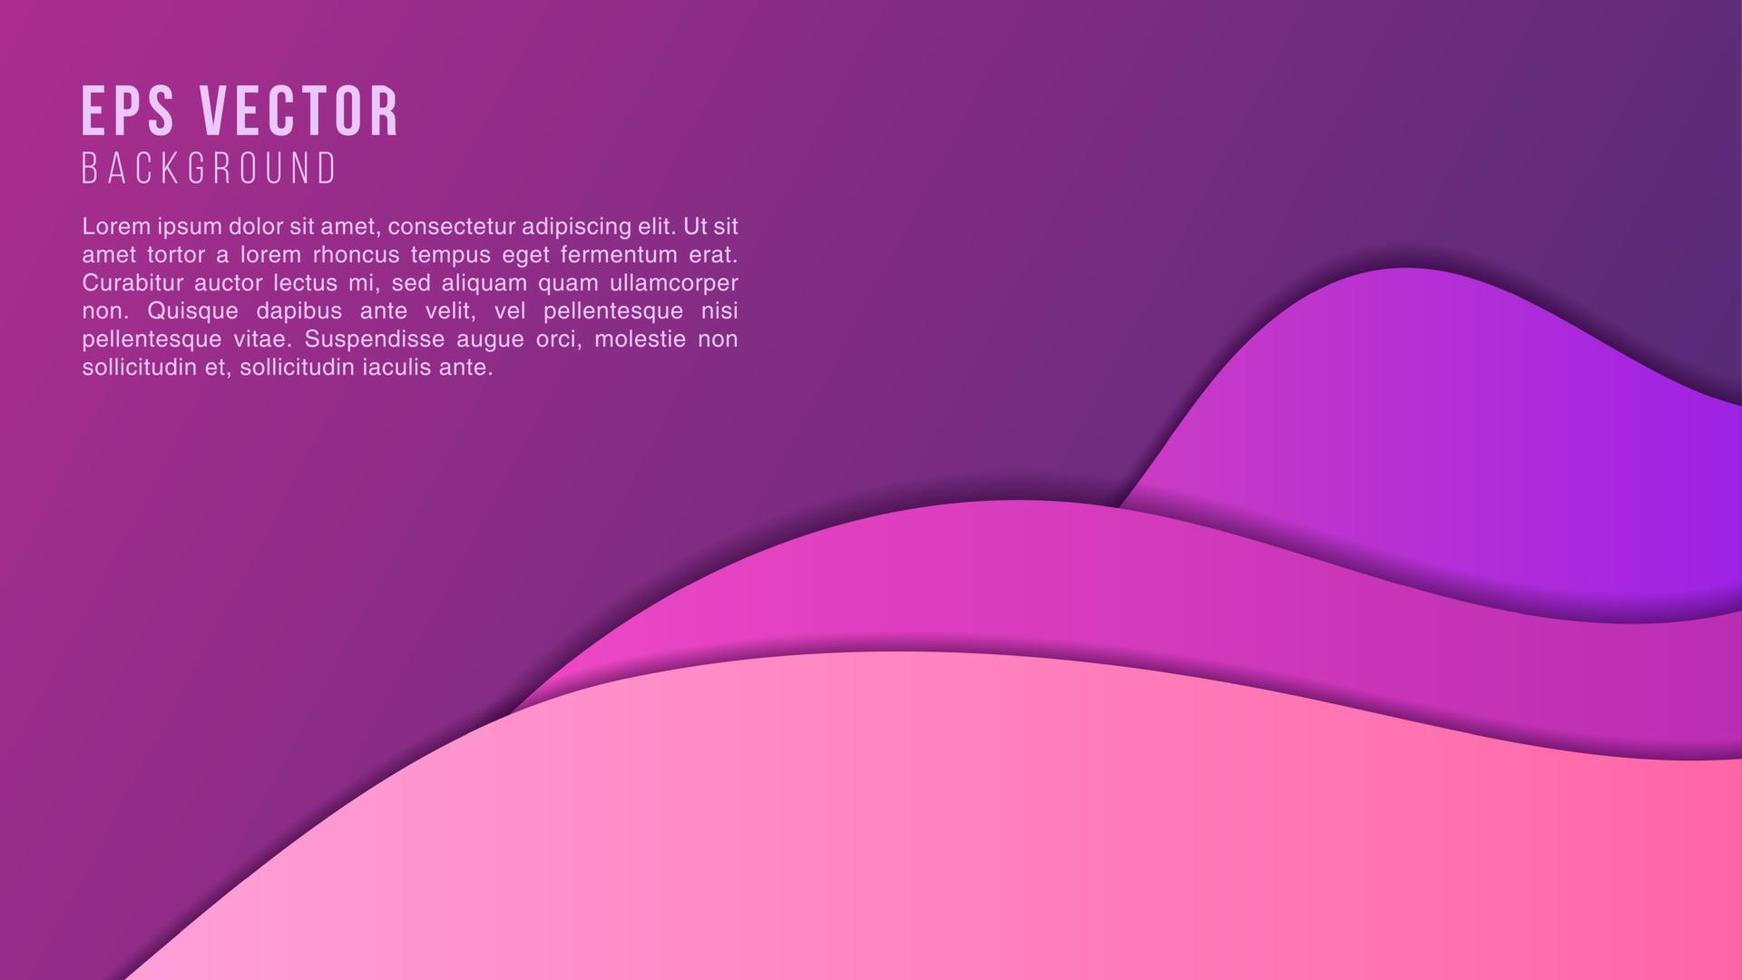 brilho moderno onda abstrata papercut fundo violeta. design de formas de onda roxa gradiente dinâmico geométrico. pode ser usado como banner, movimento, quadro ou modelo de site vetor